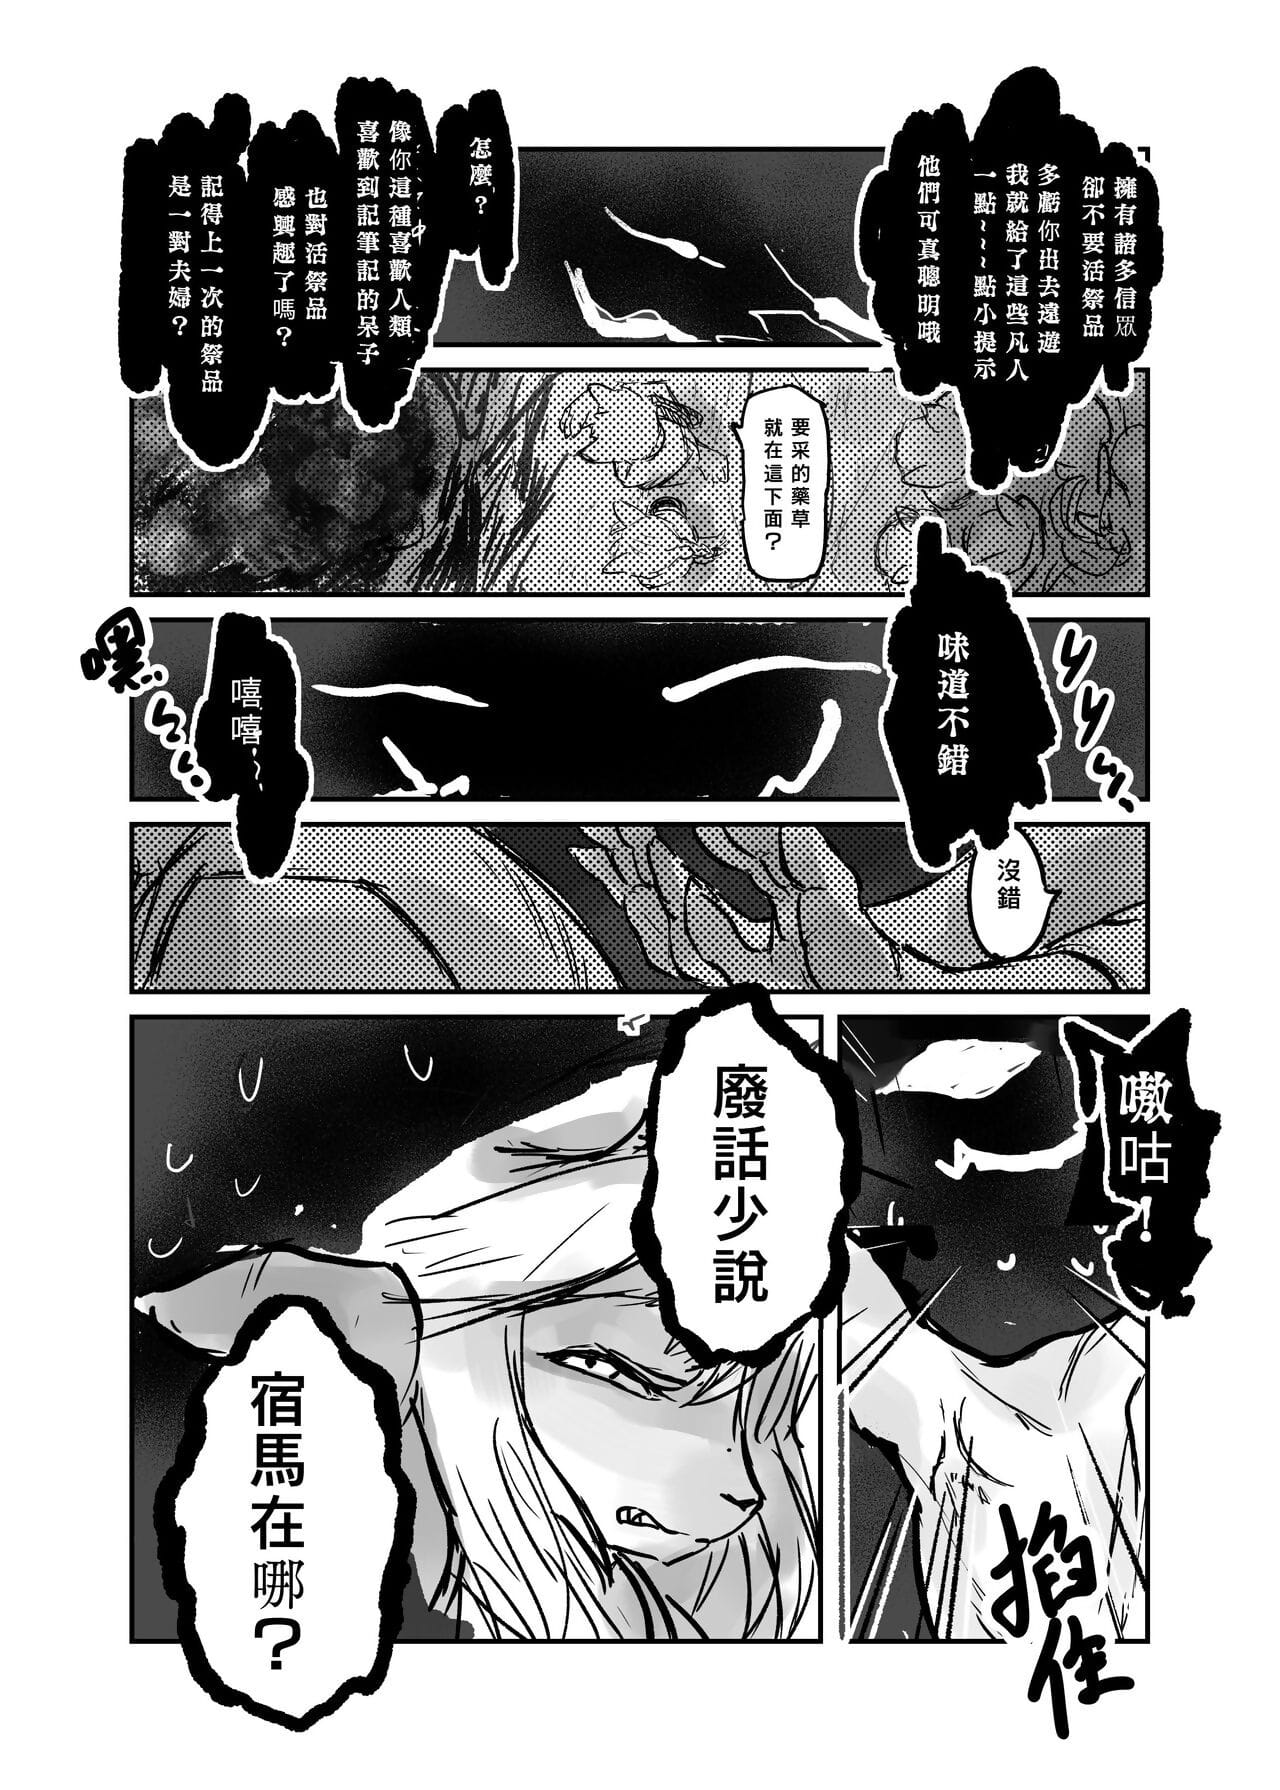 （the 방문자 他乡之人 by：鬼流 부품 3 page 1